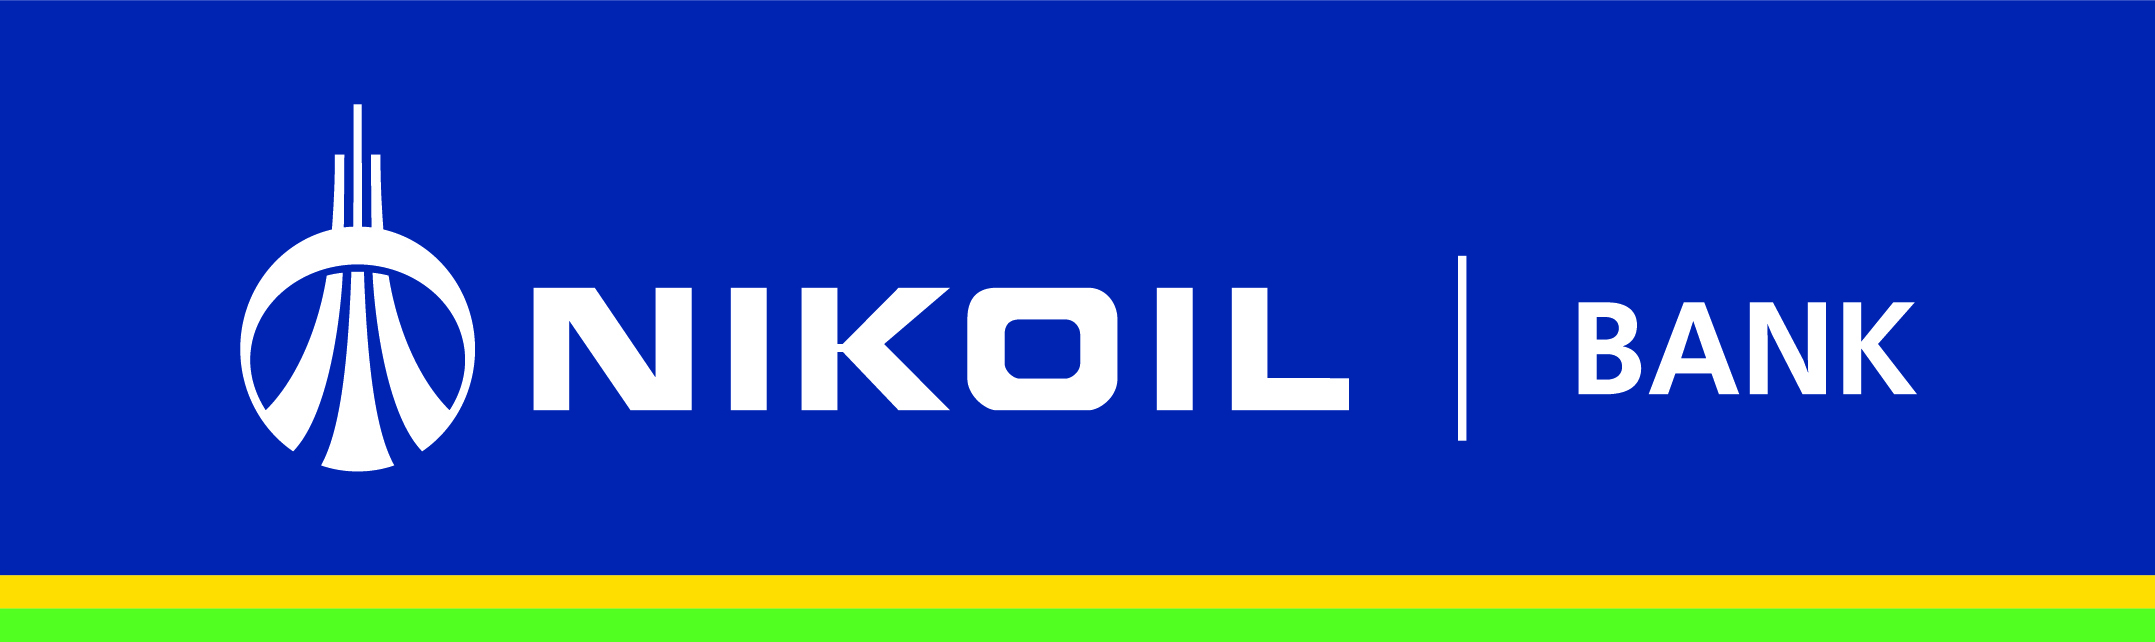 NIKOIL | Bank более 10 лет содействует развитию бизнеса в регионах